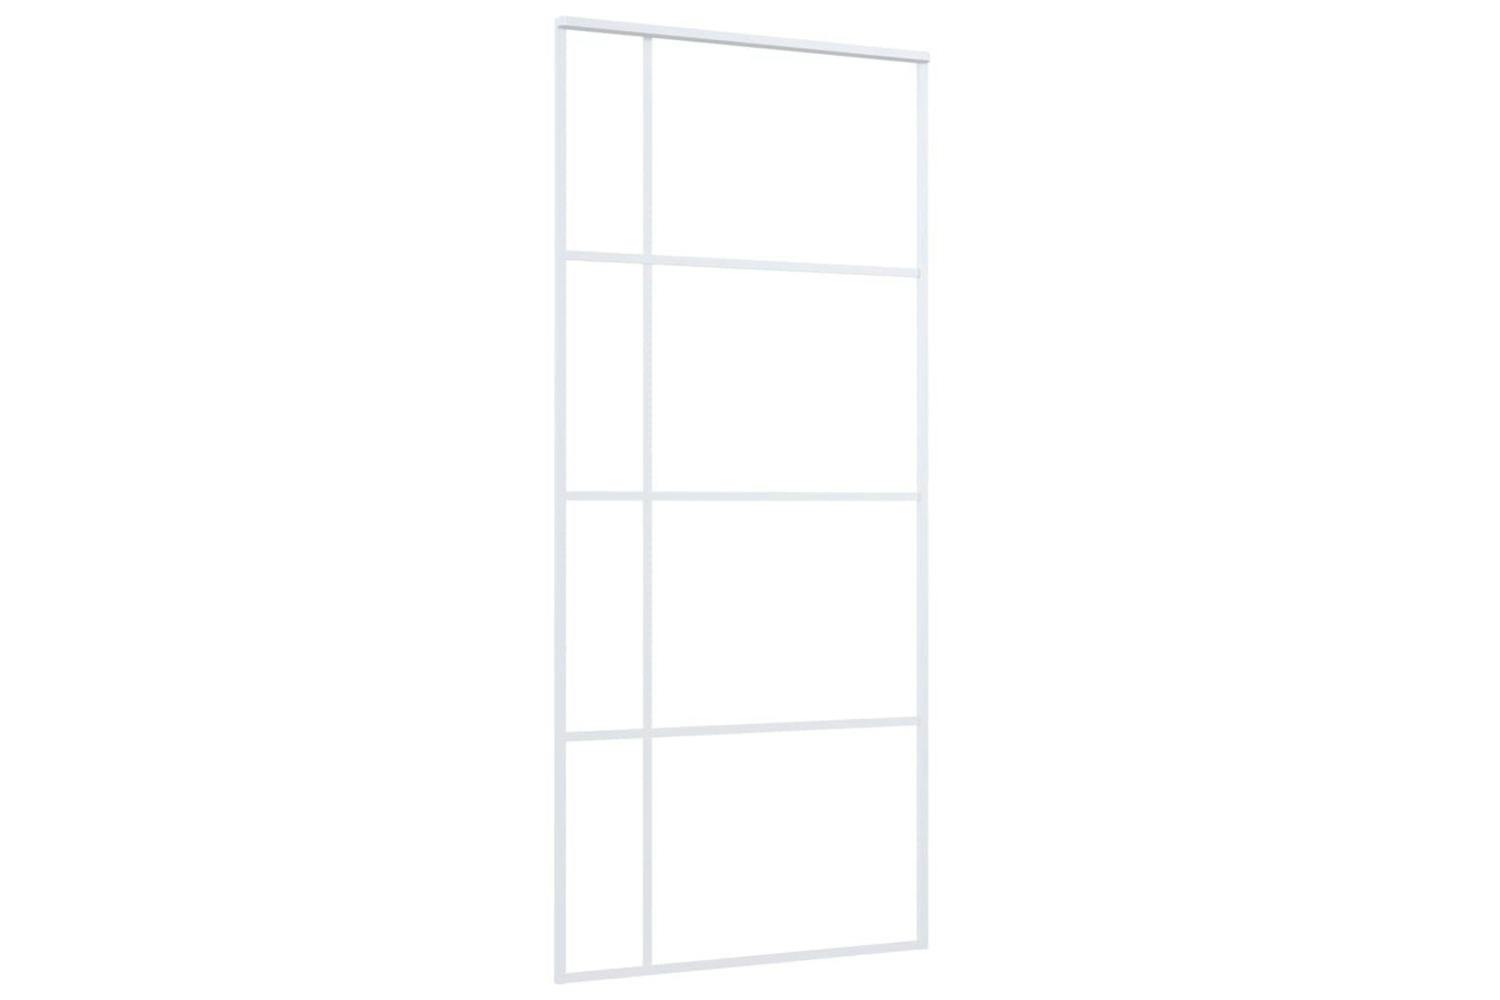 Vidaxl 151684 Sliding Door Esg Glass And Aluminium 90x205 Cm White